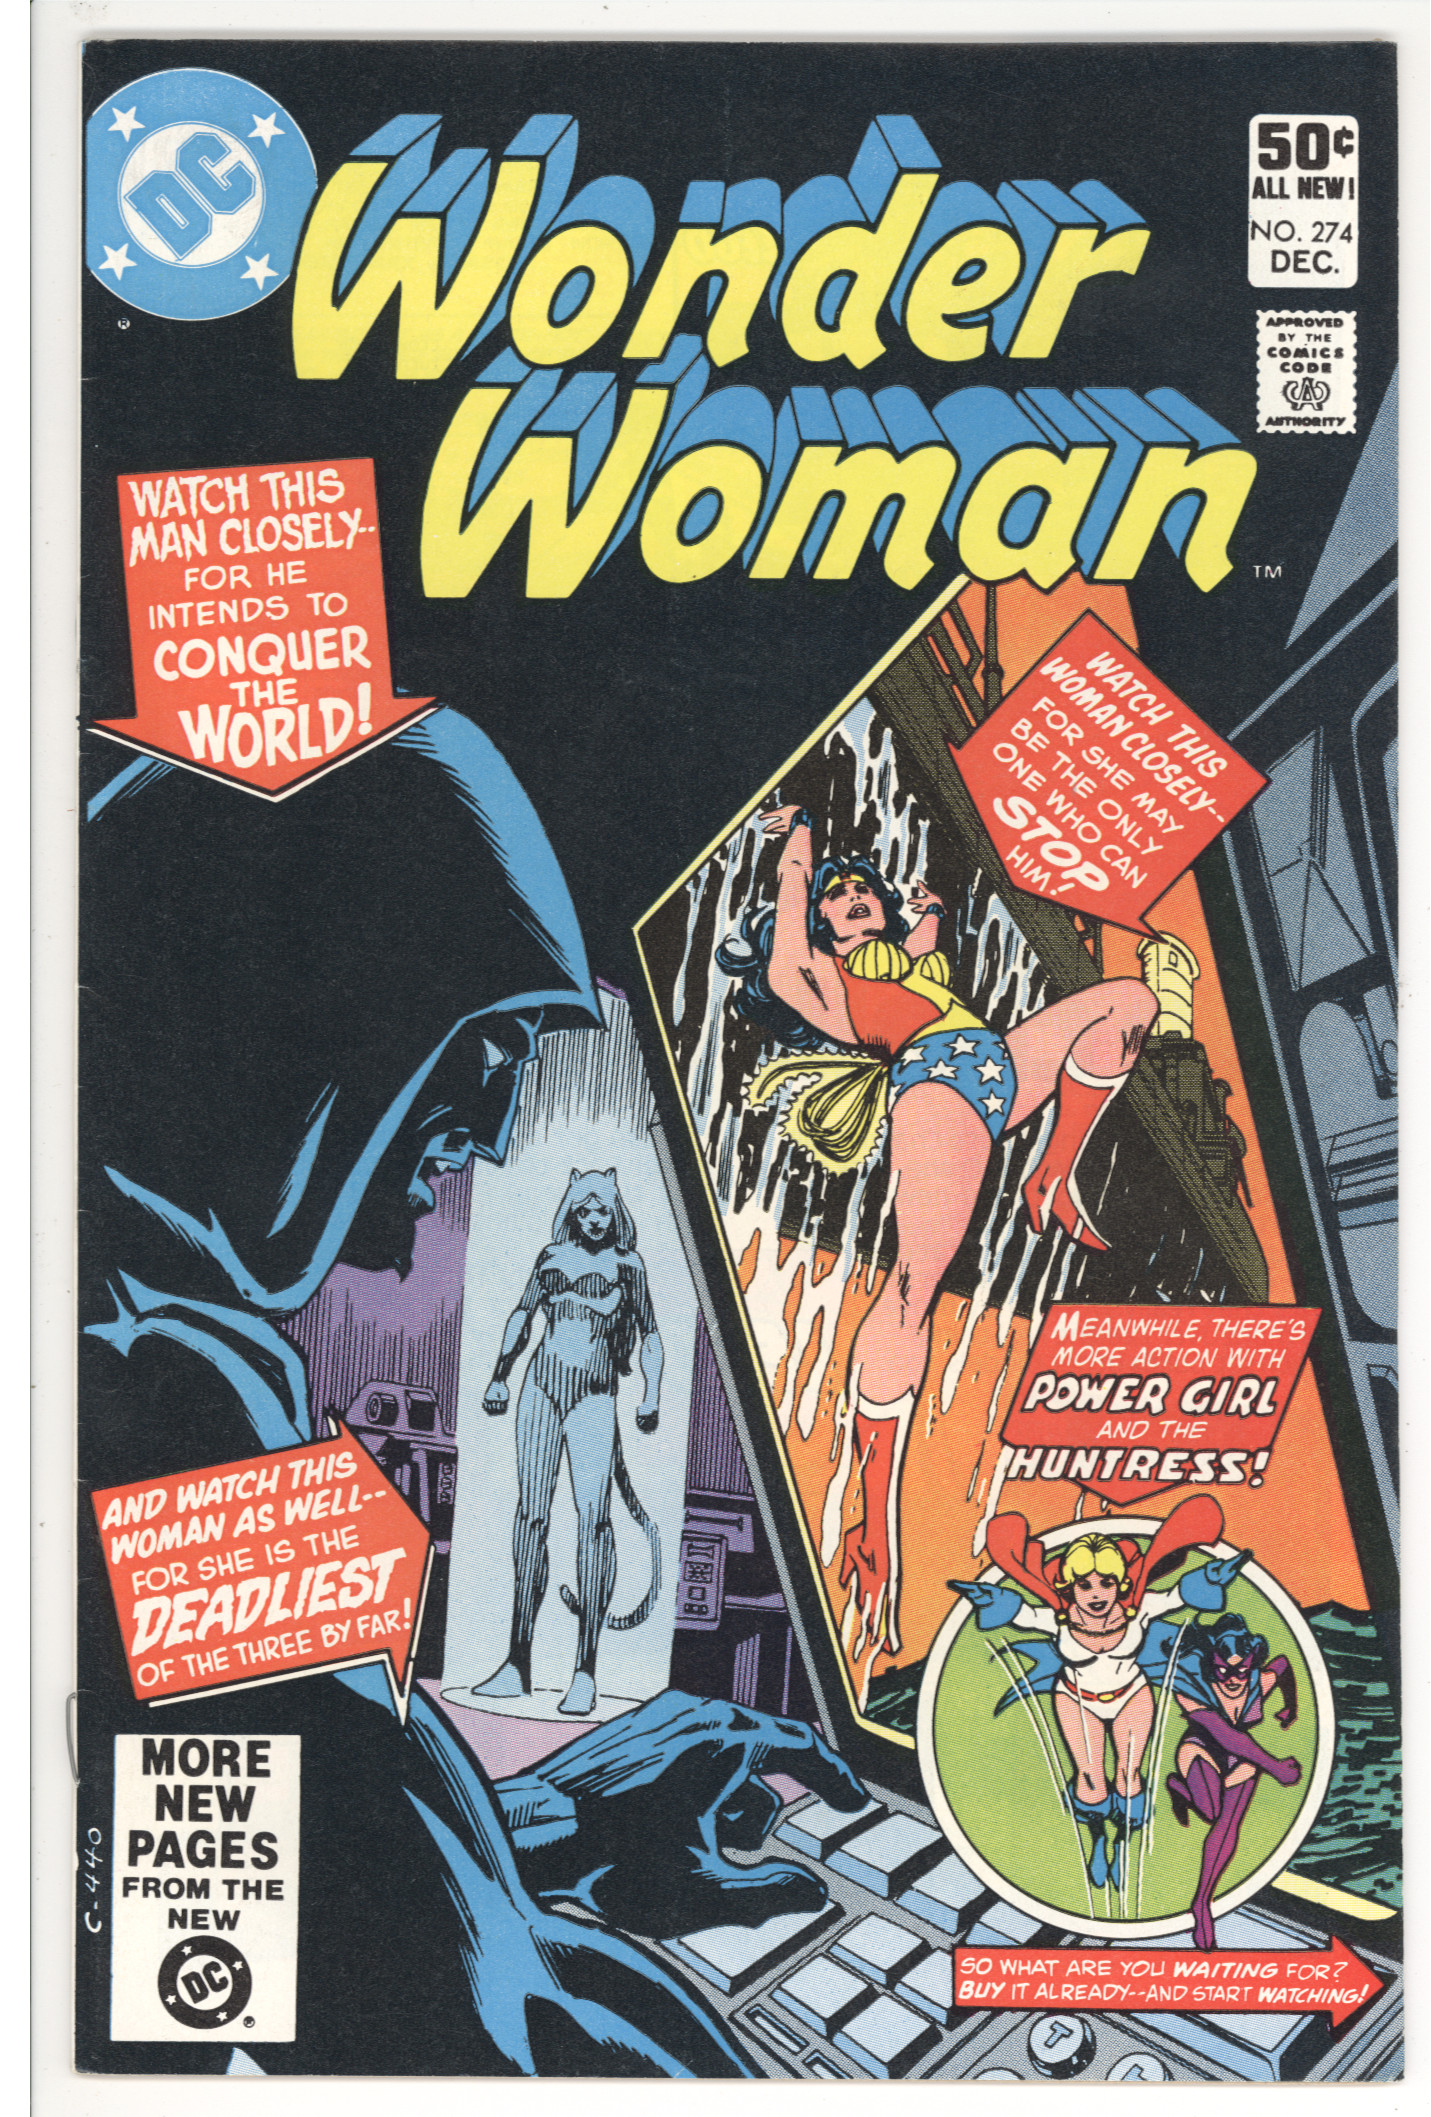 Wonder Woman #274